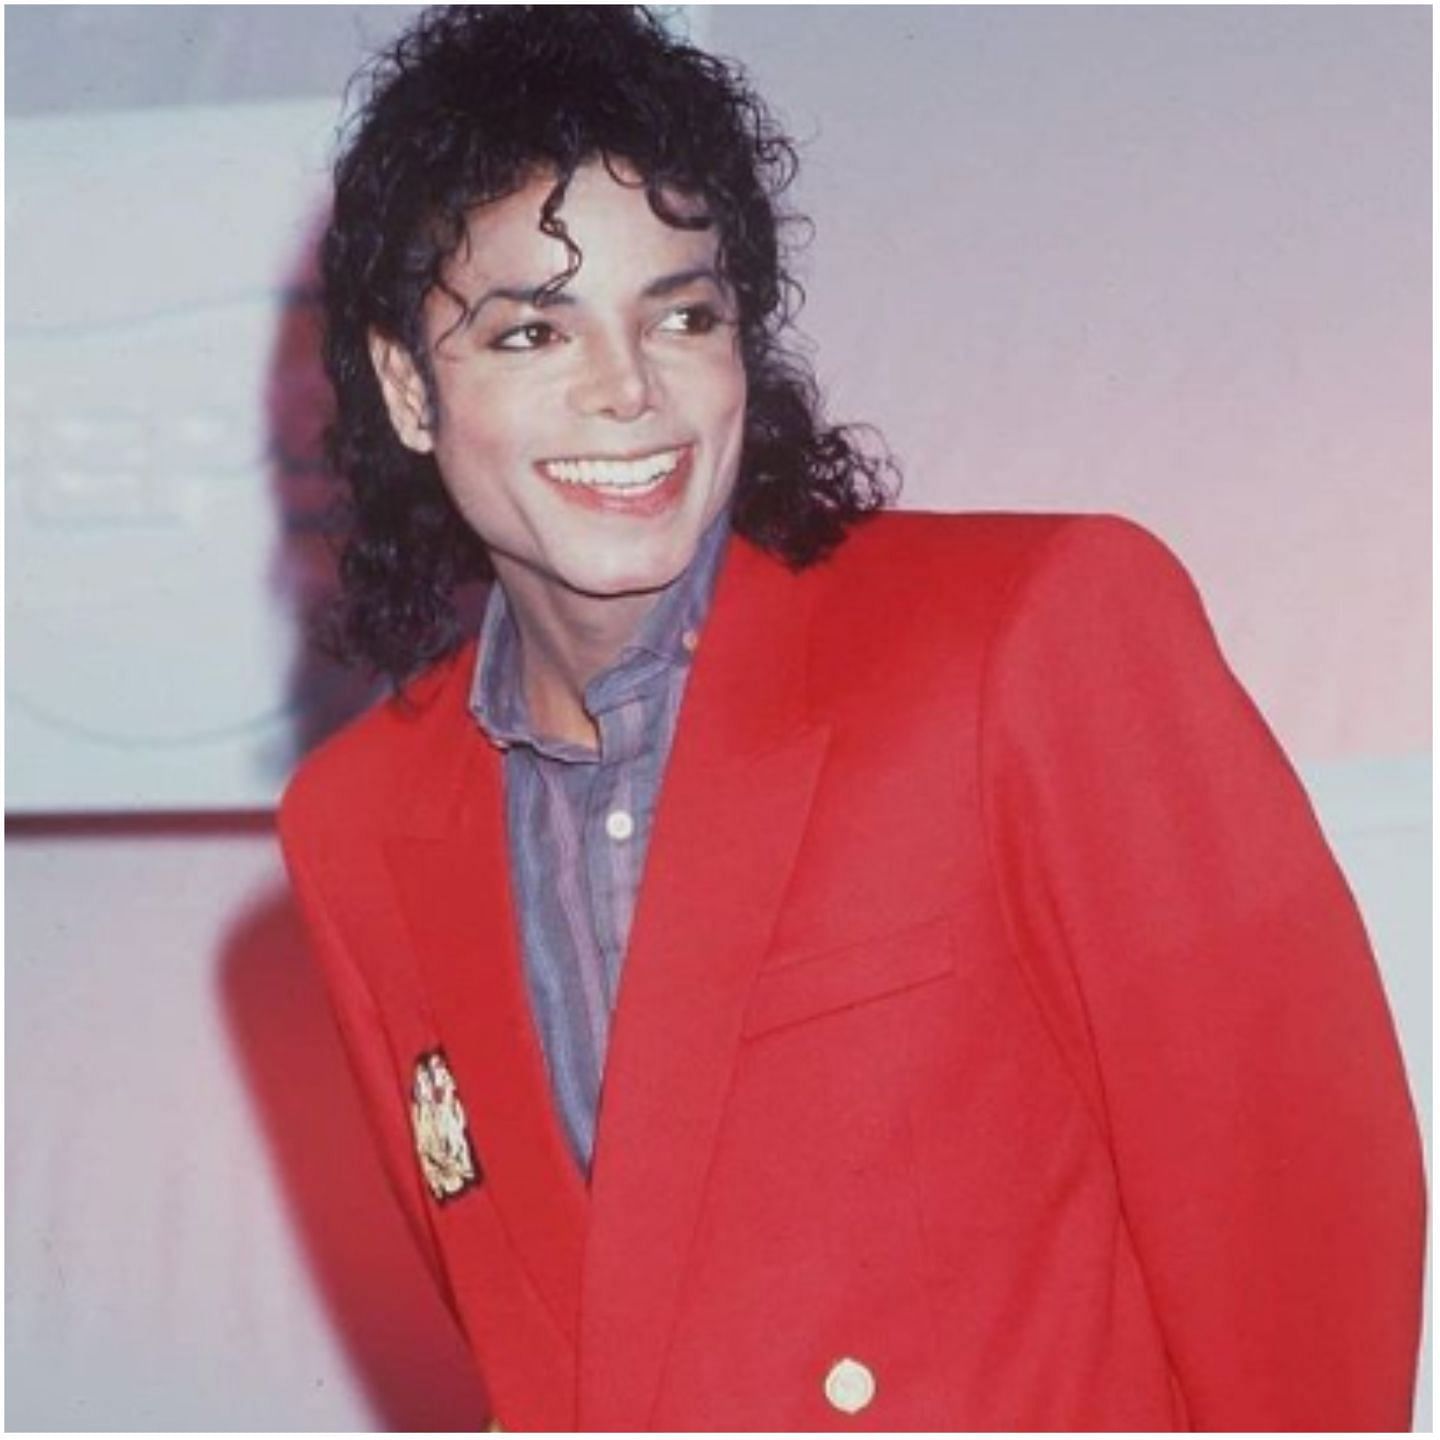 In 1994, Michael Jackson married Lisa Marie Presley, daughter of Elvis.. (Image via Instagram @mj_fan.acc)